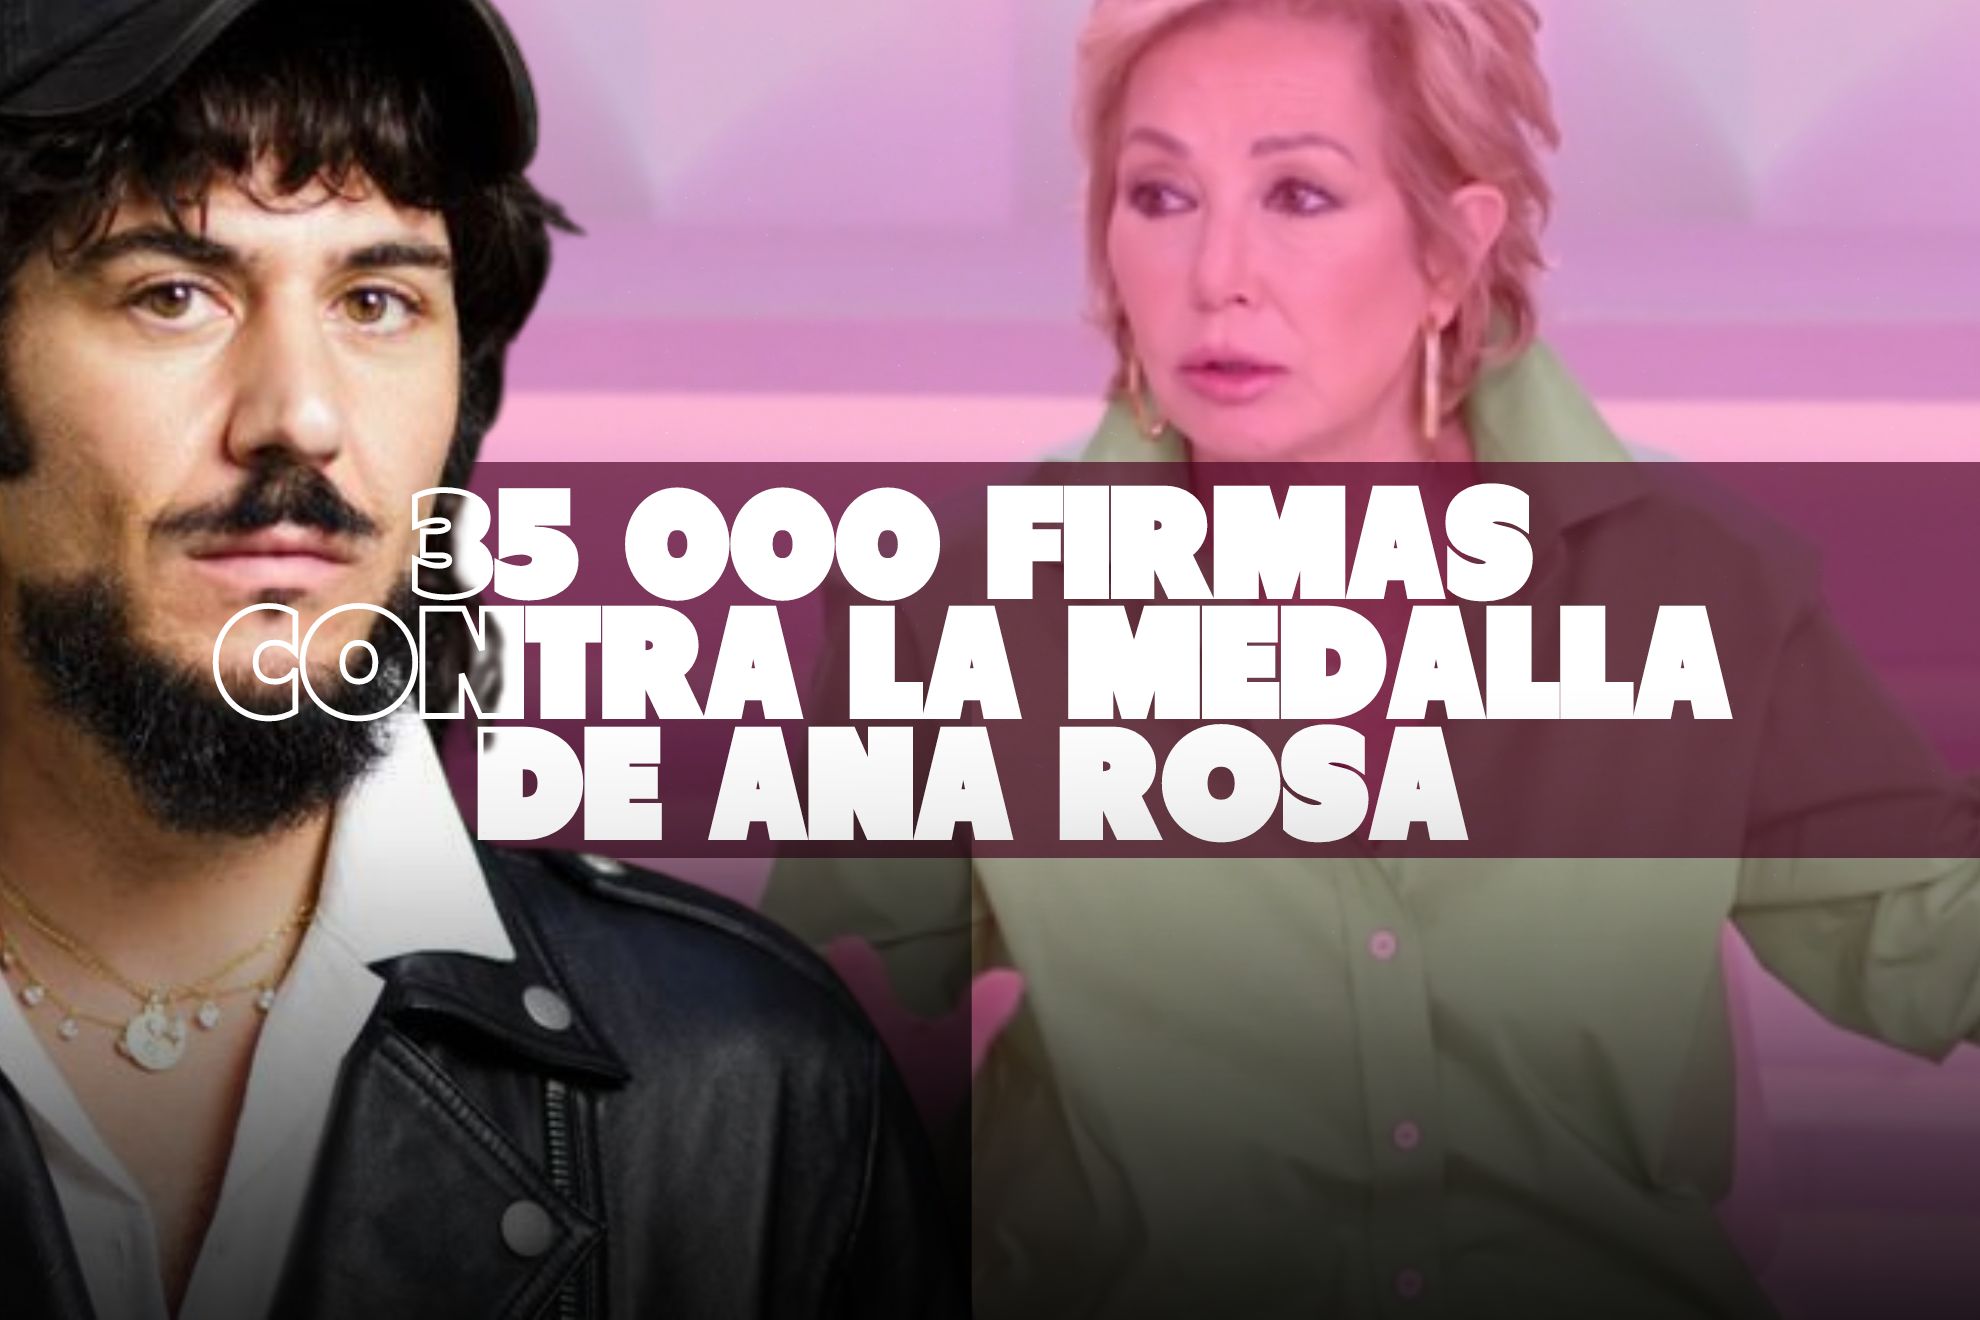 La petición de Paco Bezerra para que quiten la medalla a Ana Rosa consigue más de 35 000 firmas (de momento)